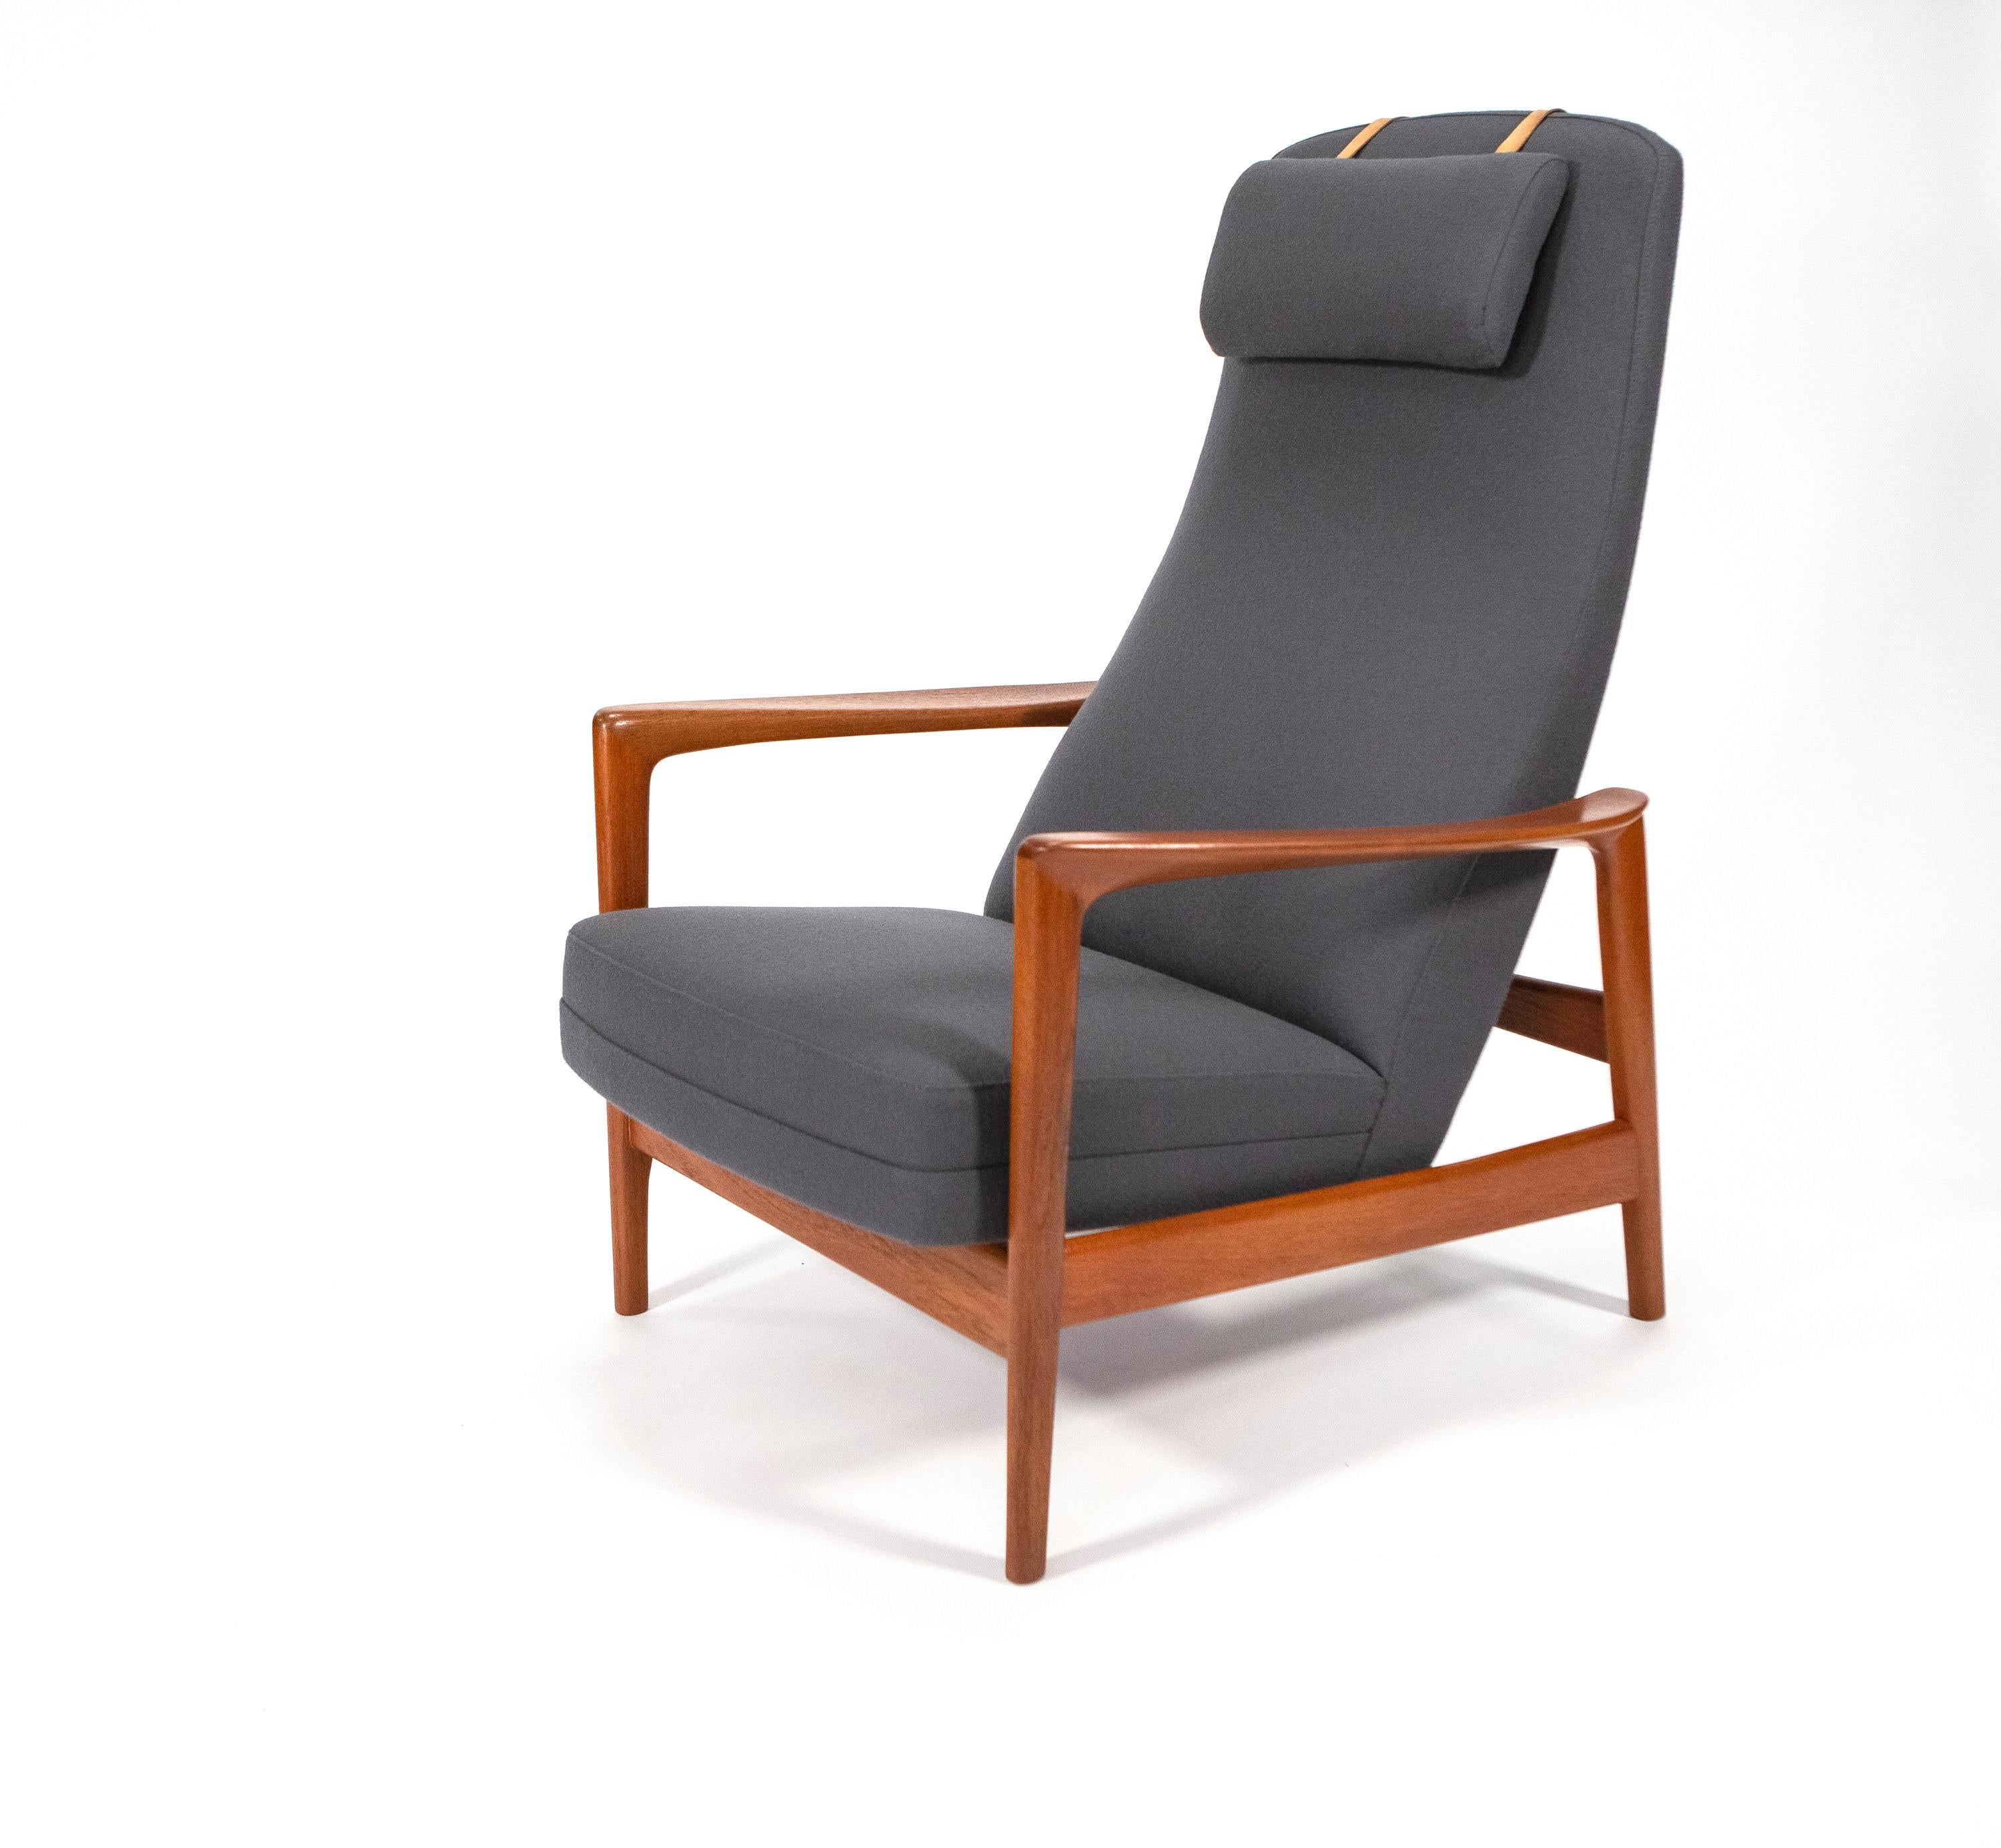 Fauteuil réglable 'Duxiesta' en teck de Folke Ohlsson par DUX - Suède années 1960

chaise longue et ottomane Folke Ohlsson pour DUX, années 1960, cadre réglable en bois de teck. Fabriqué en Suède.

Un fauteuil inclinable réglable pour un confort